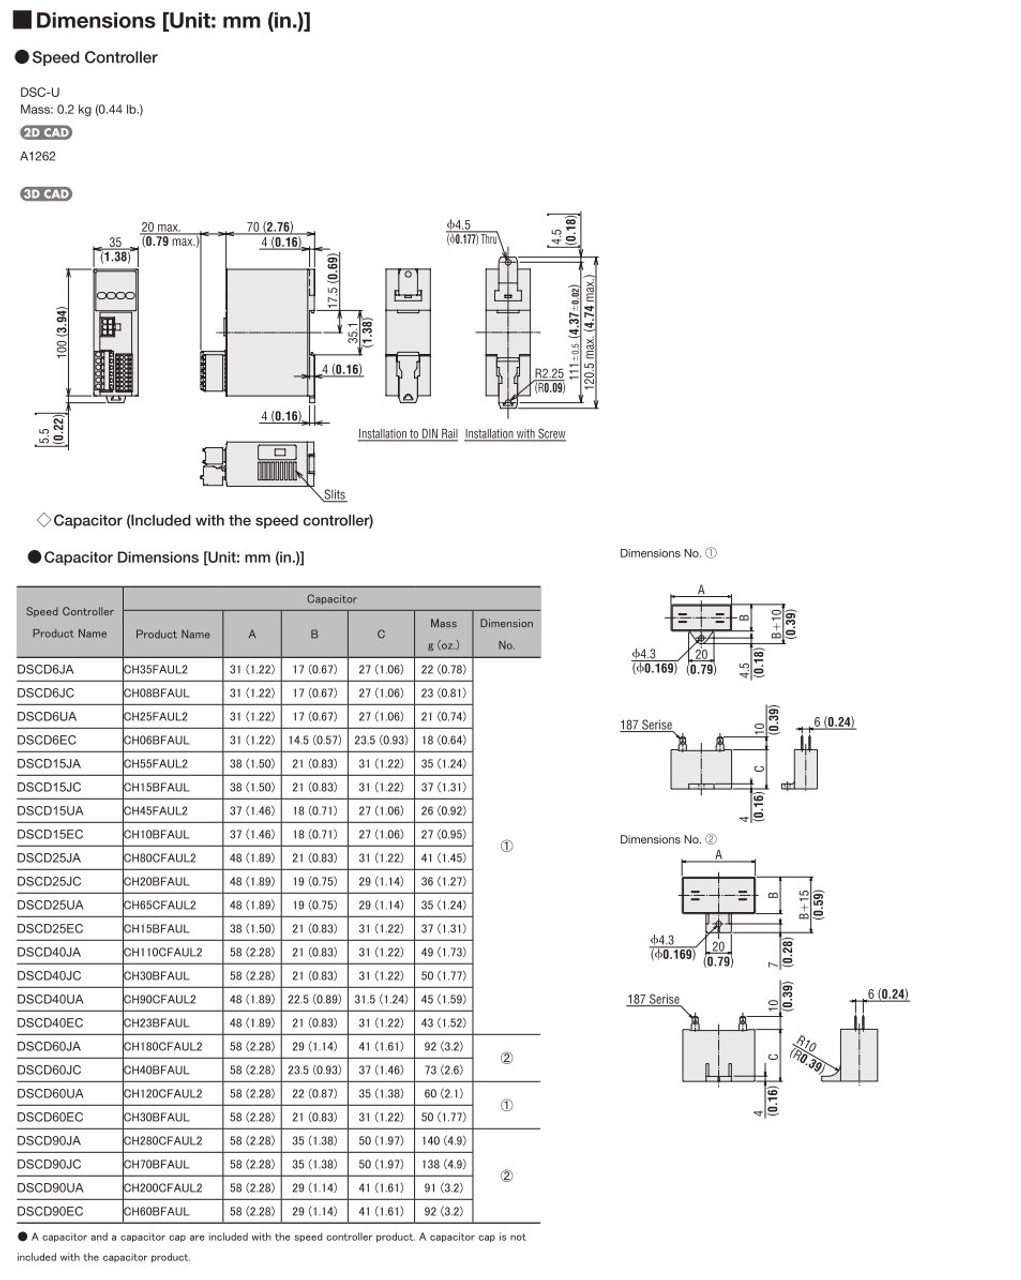 SCM425EC-15A / DSCD25EC - Dimensions